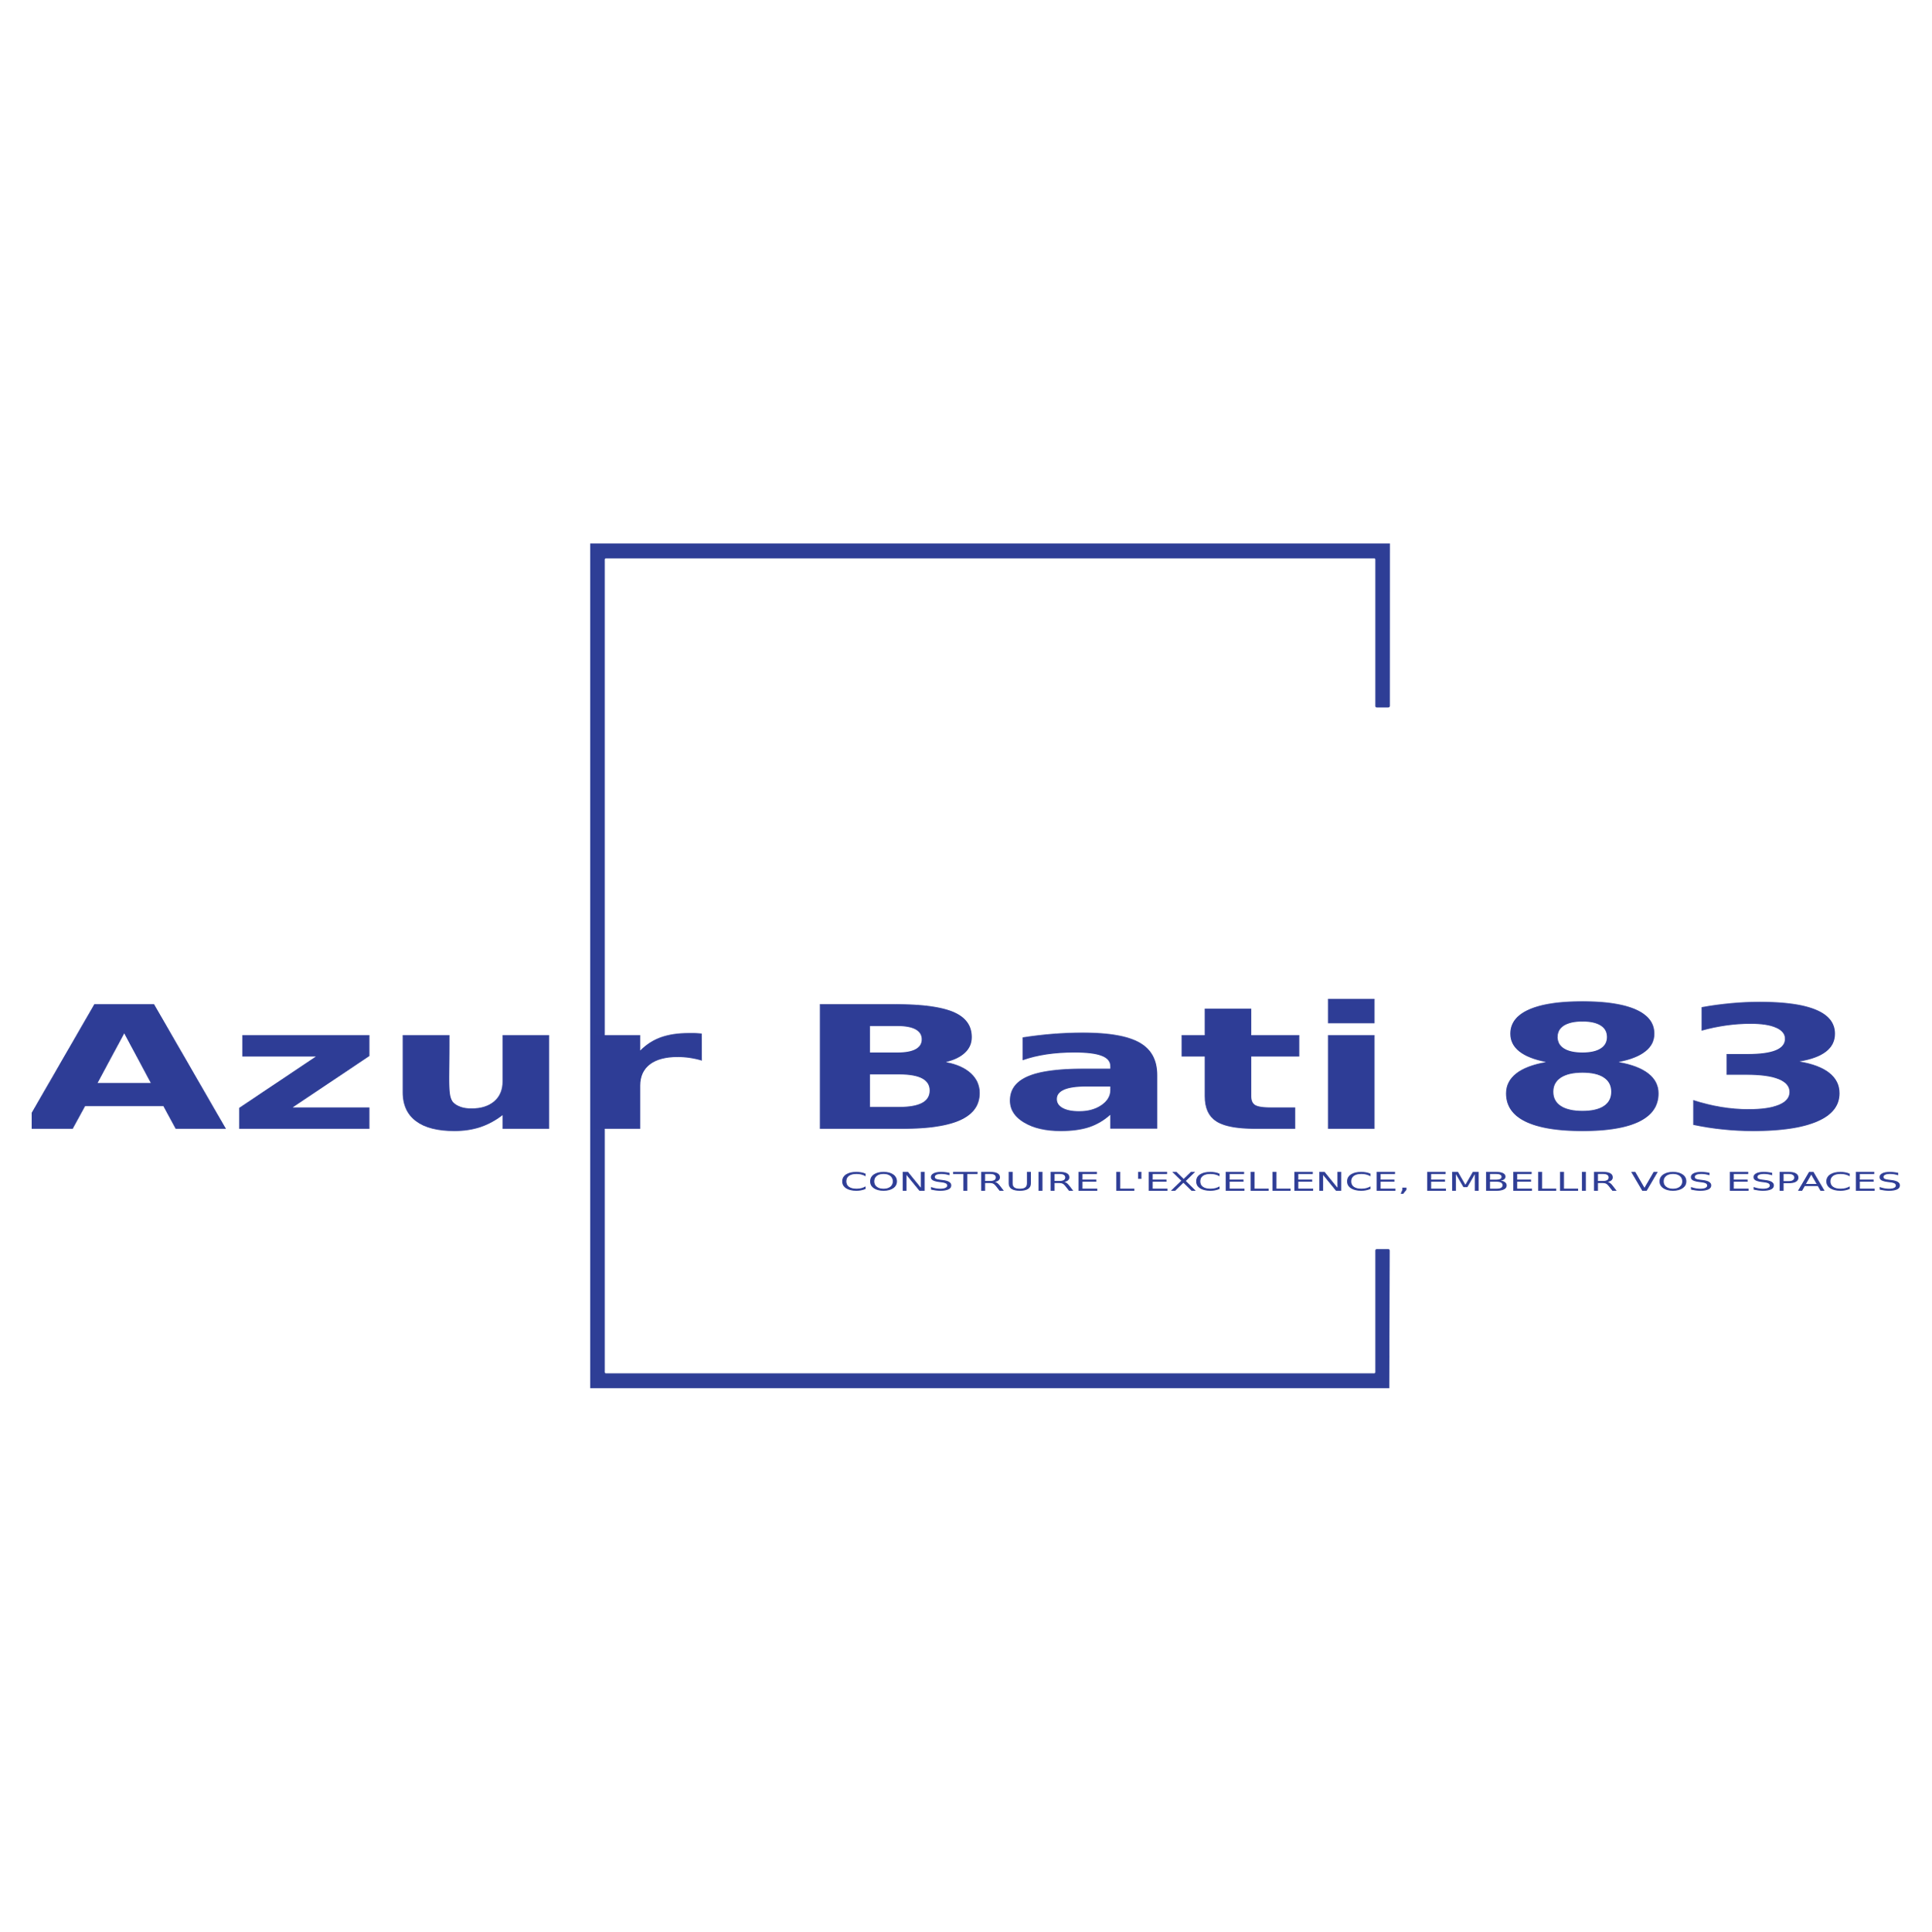 Azur Bati 83 2021 Logo  Transparent Image